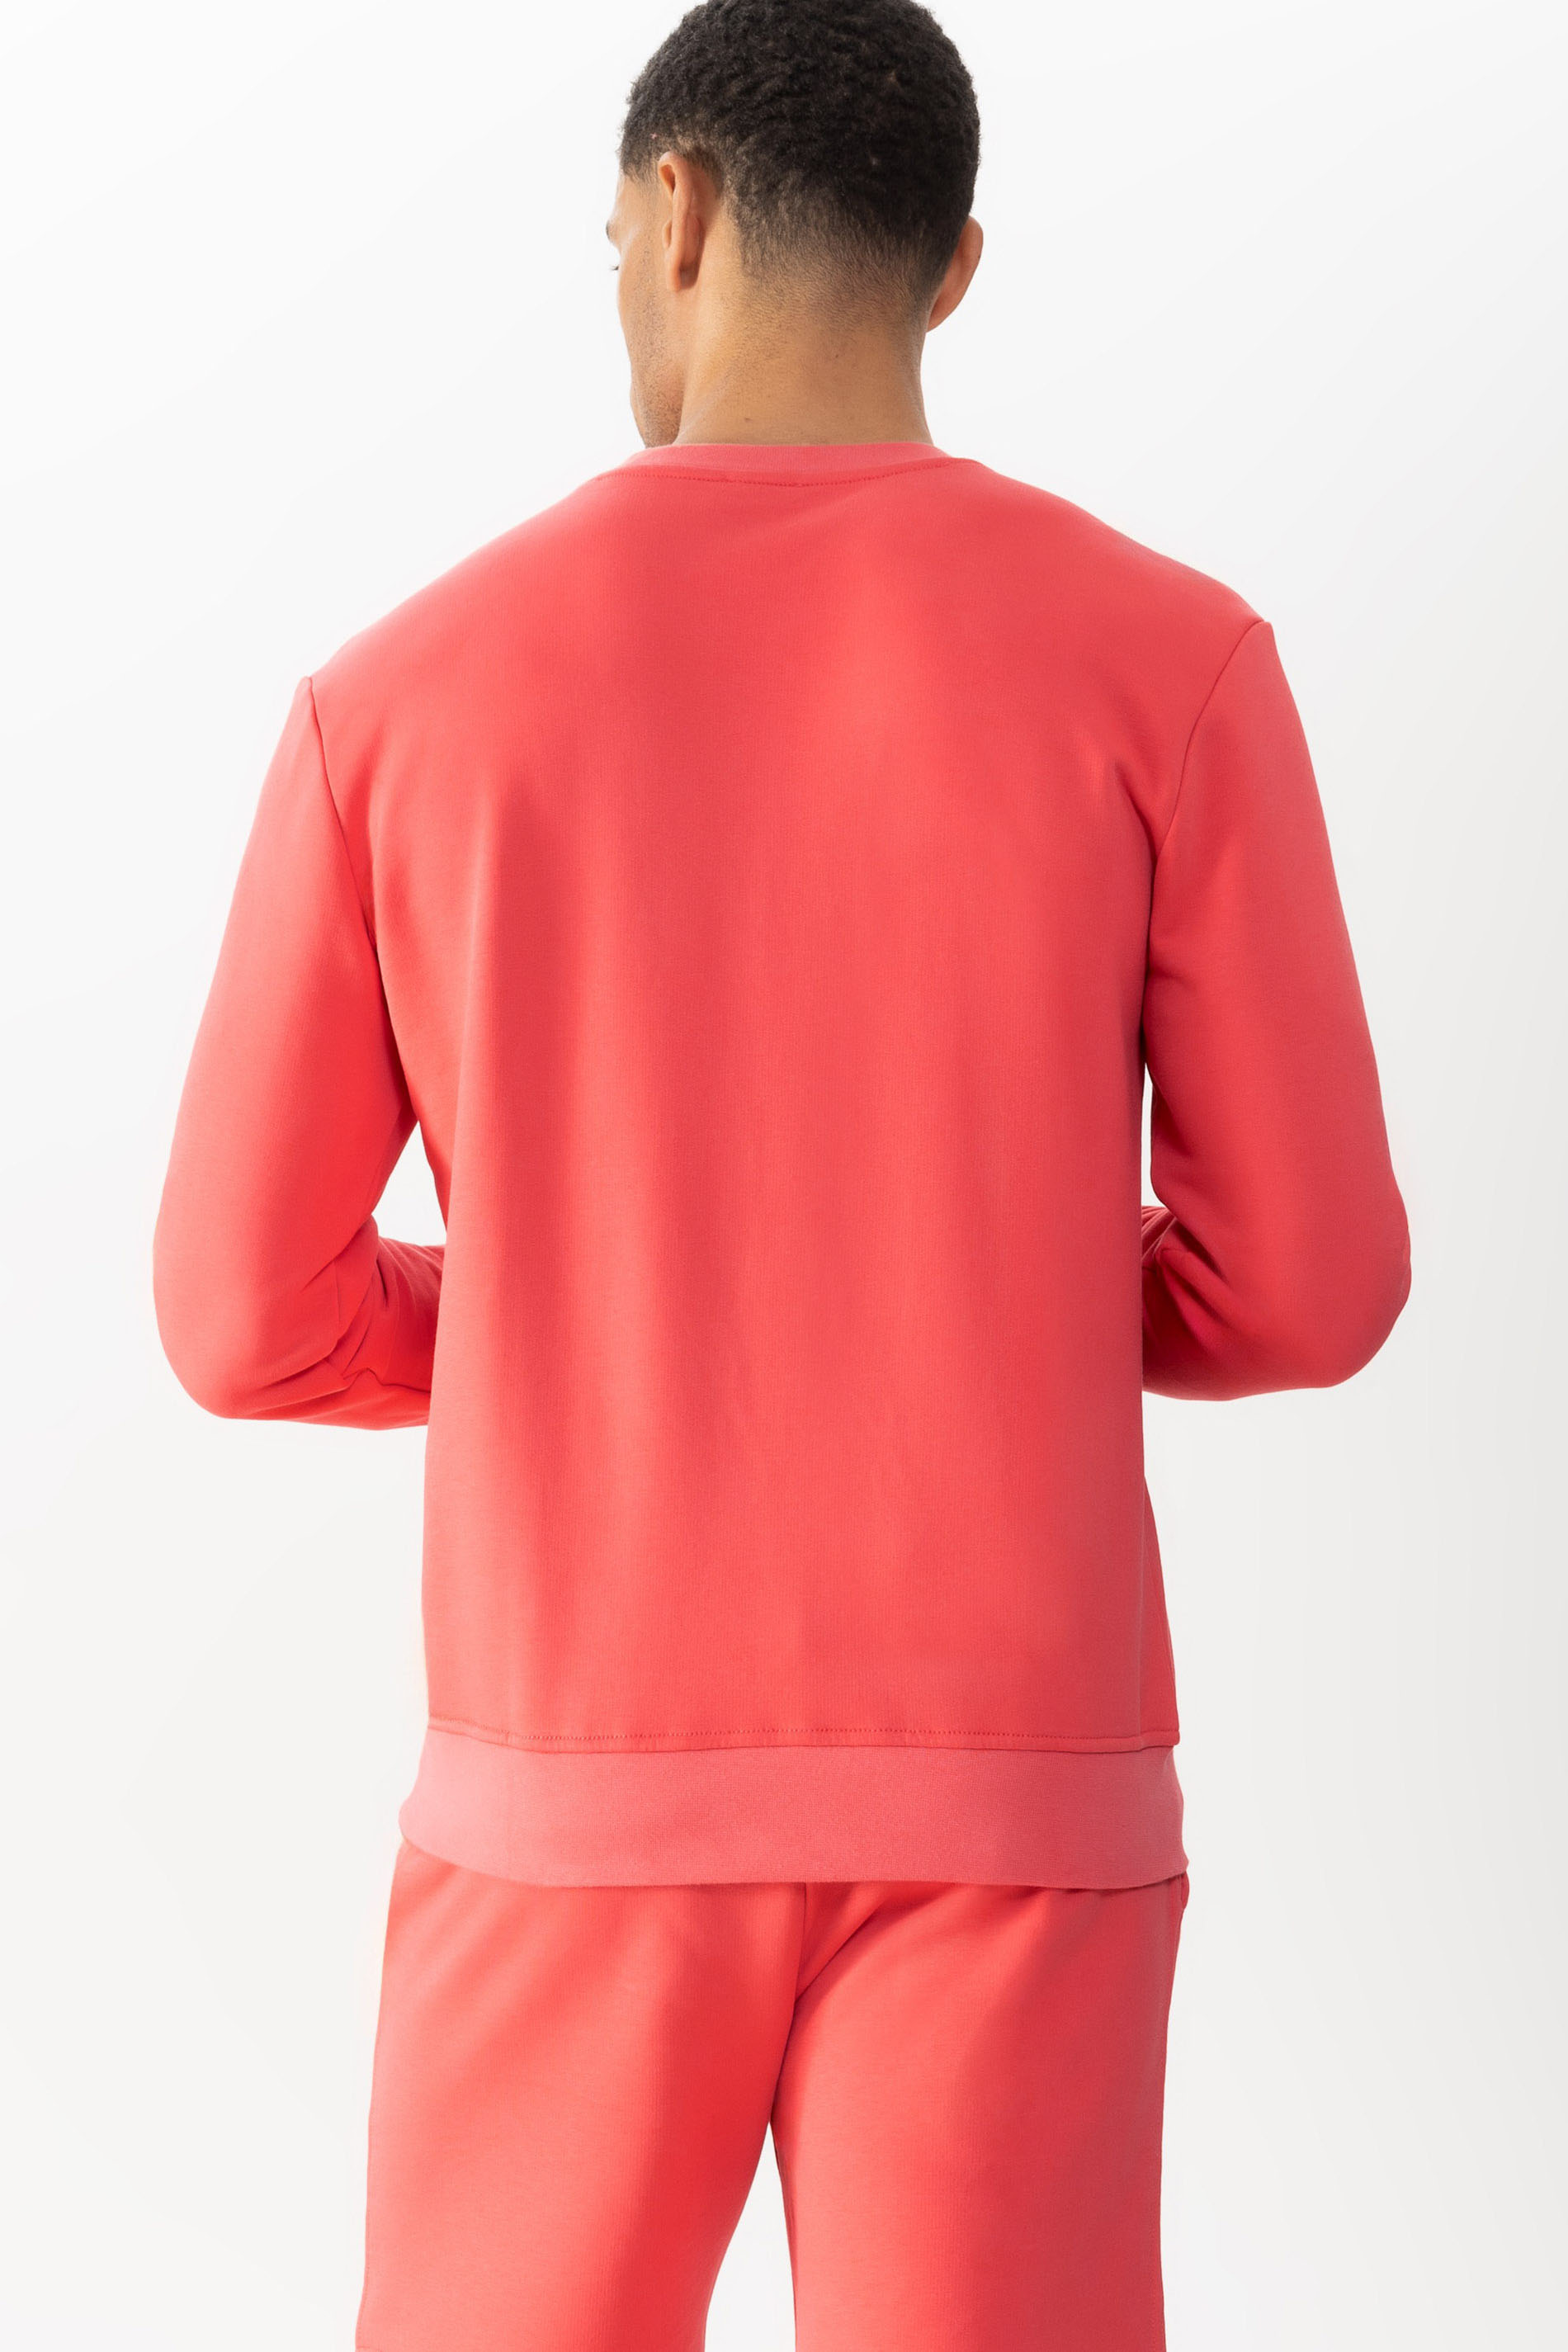 Sweatshirt Serie Lido Rear View | mey®